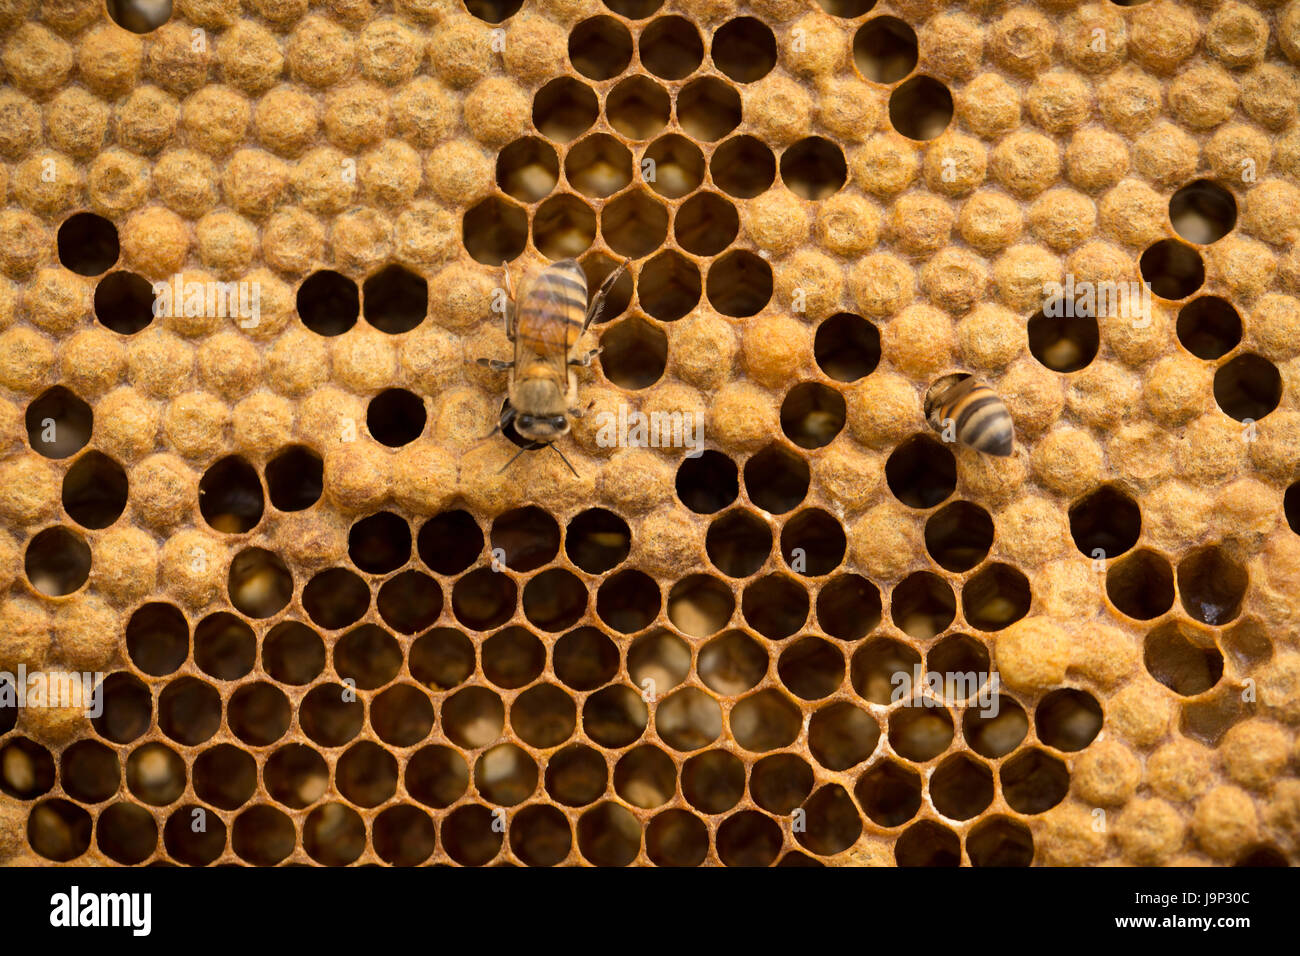 La miel es cosechada de colmenas y marcos en el departamento de León, Nicaragua. Foto de stock